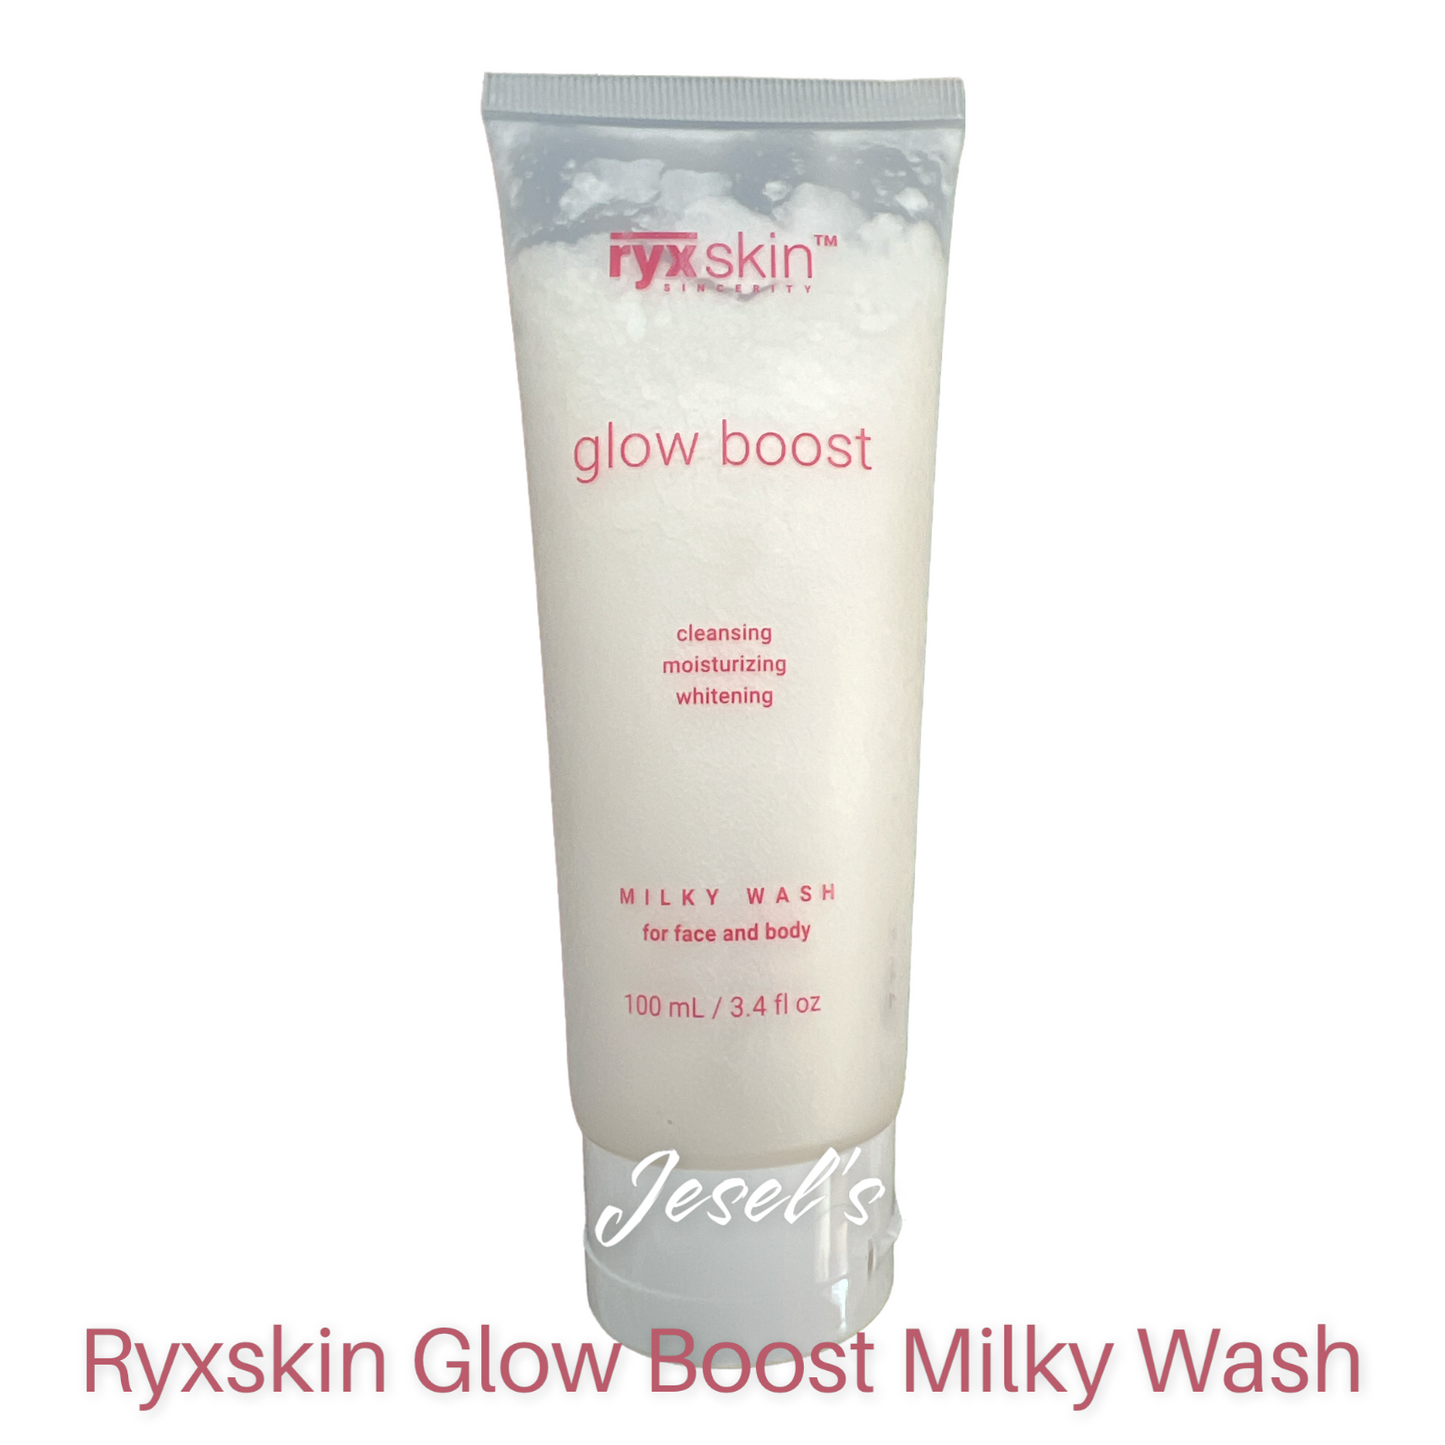 Ryxskin Glow Boost Milky Wash